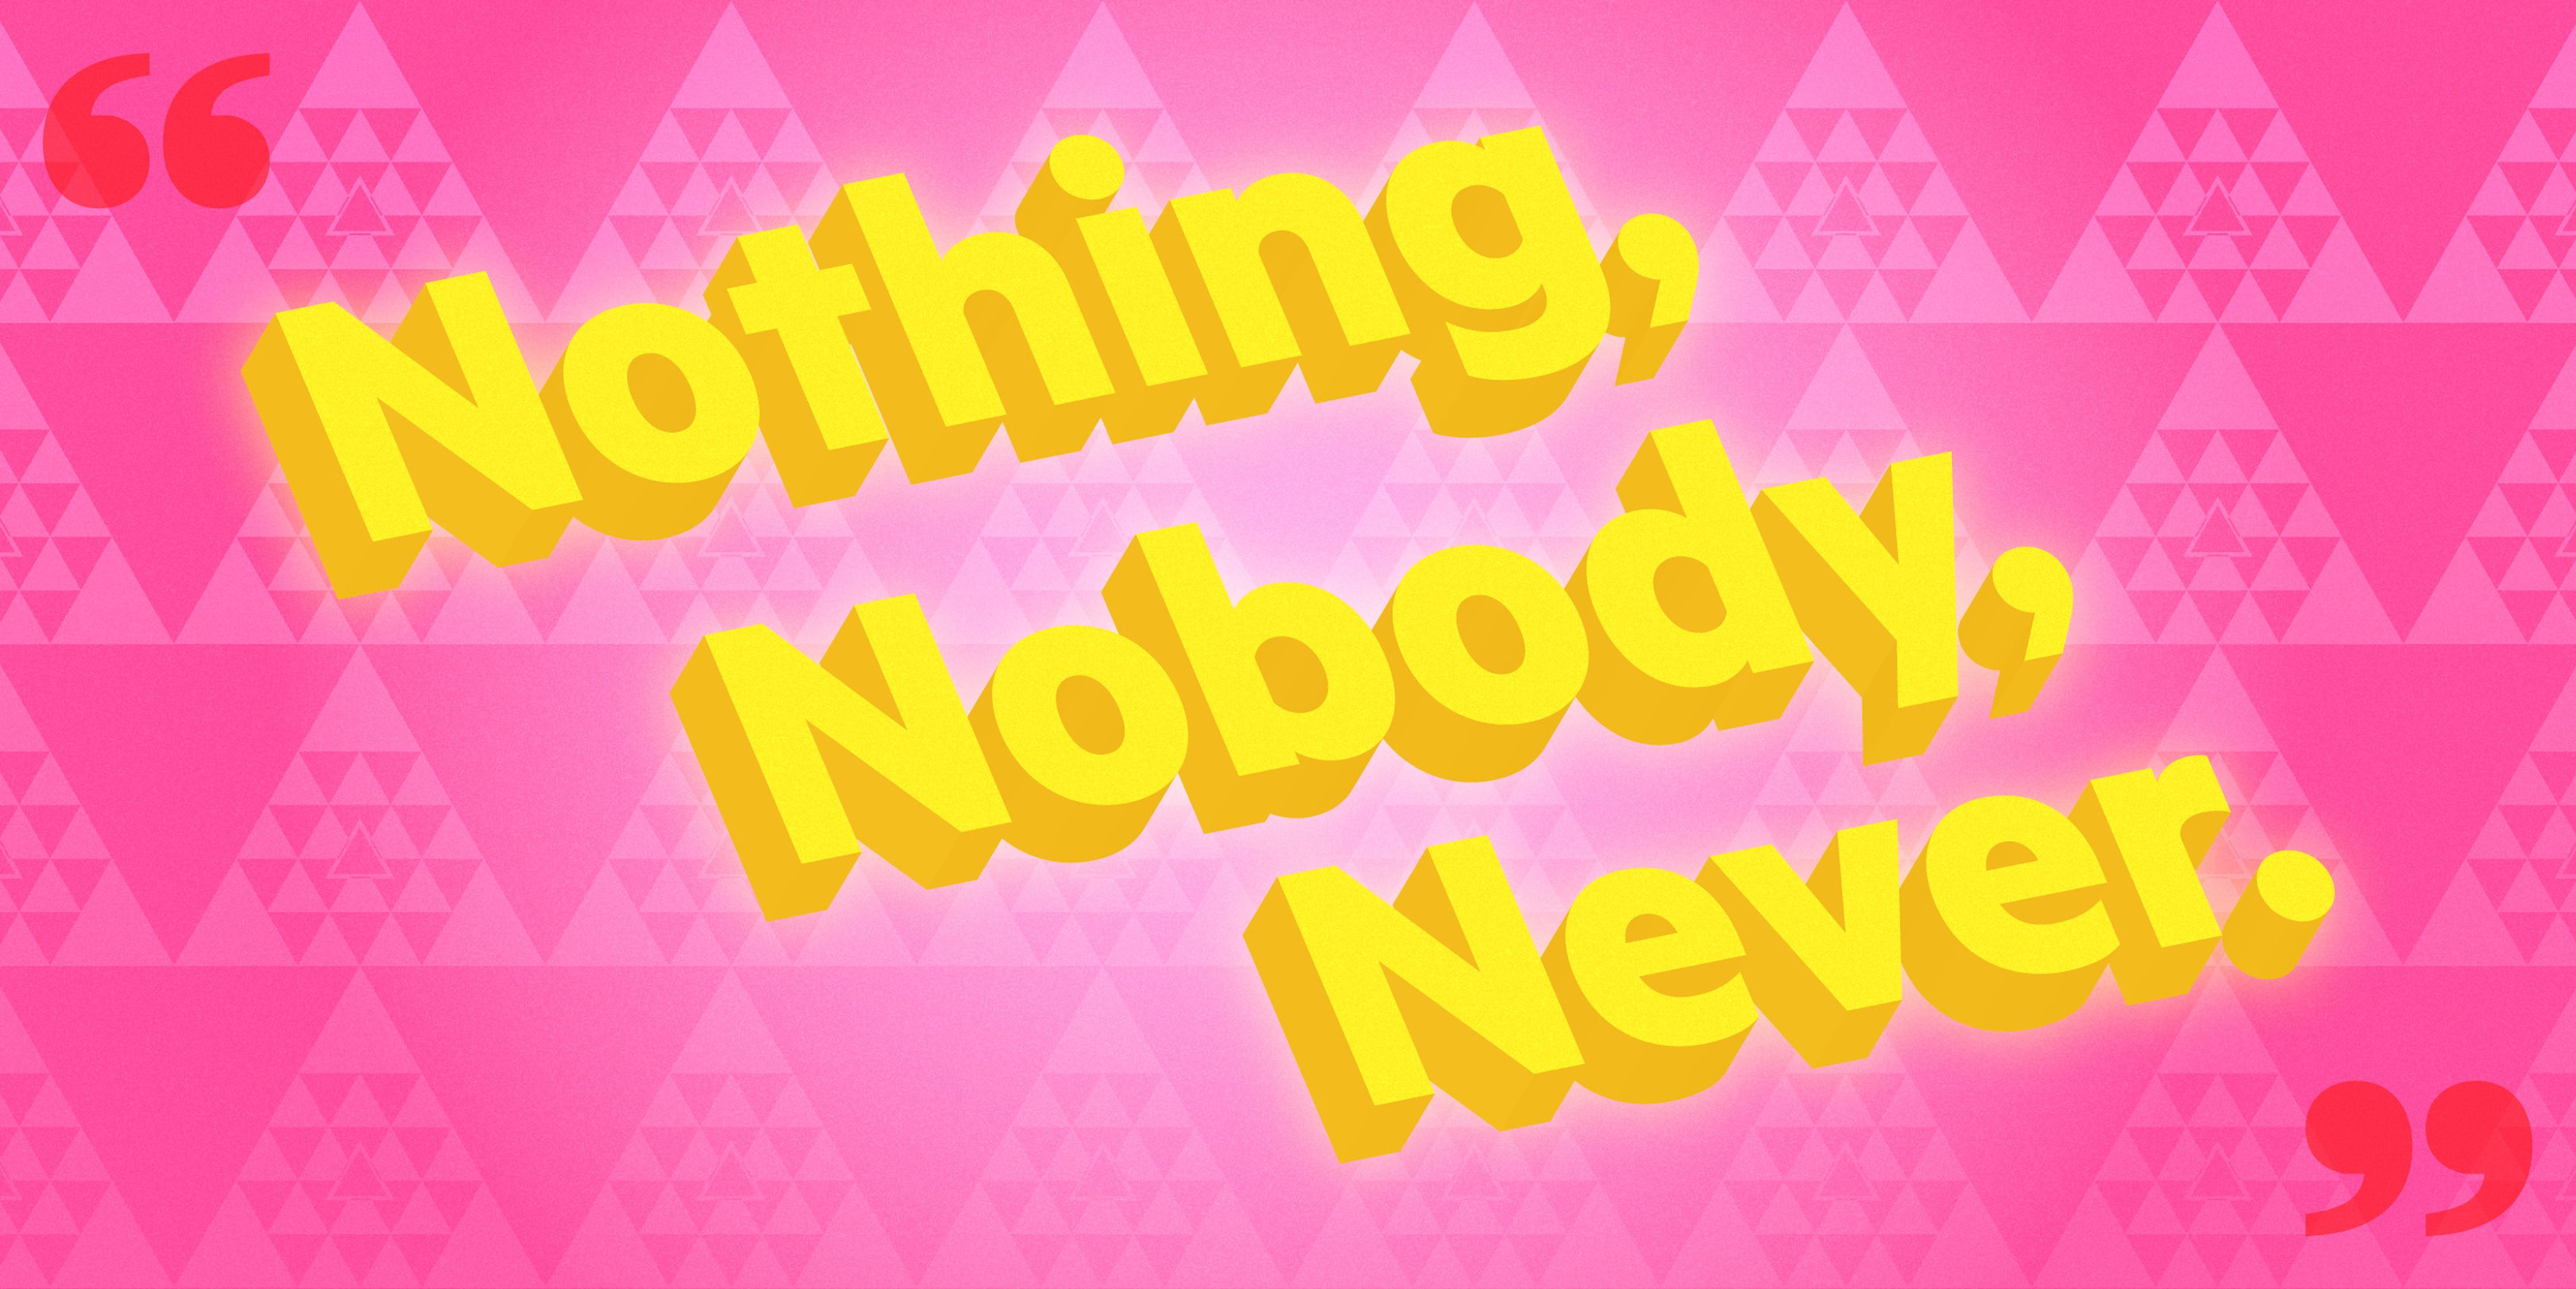 El lema no oficial de YPO es "Nada, nadie, nunca".